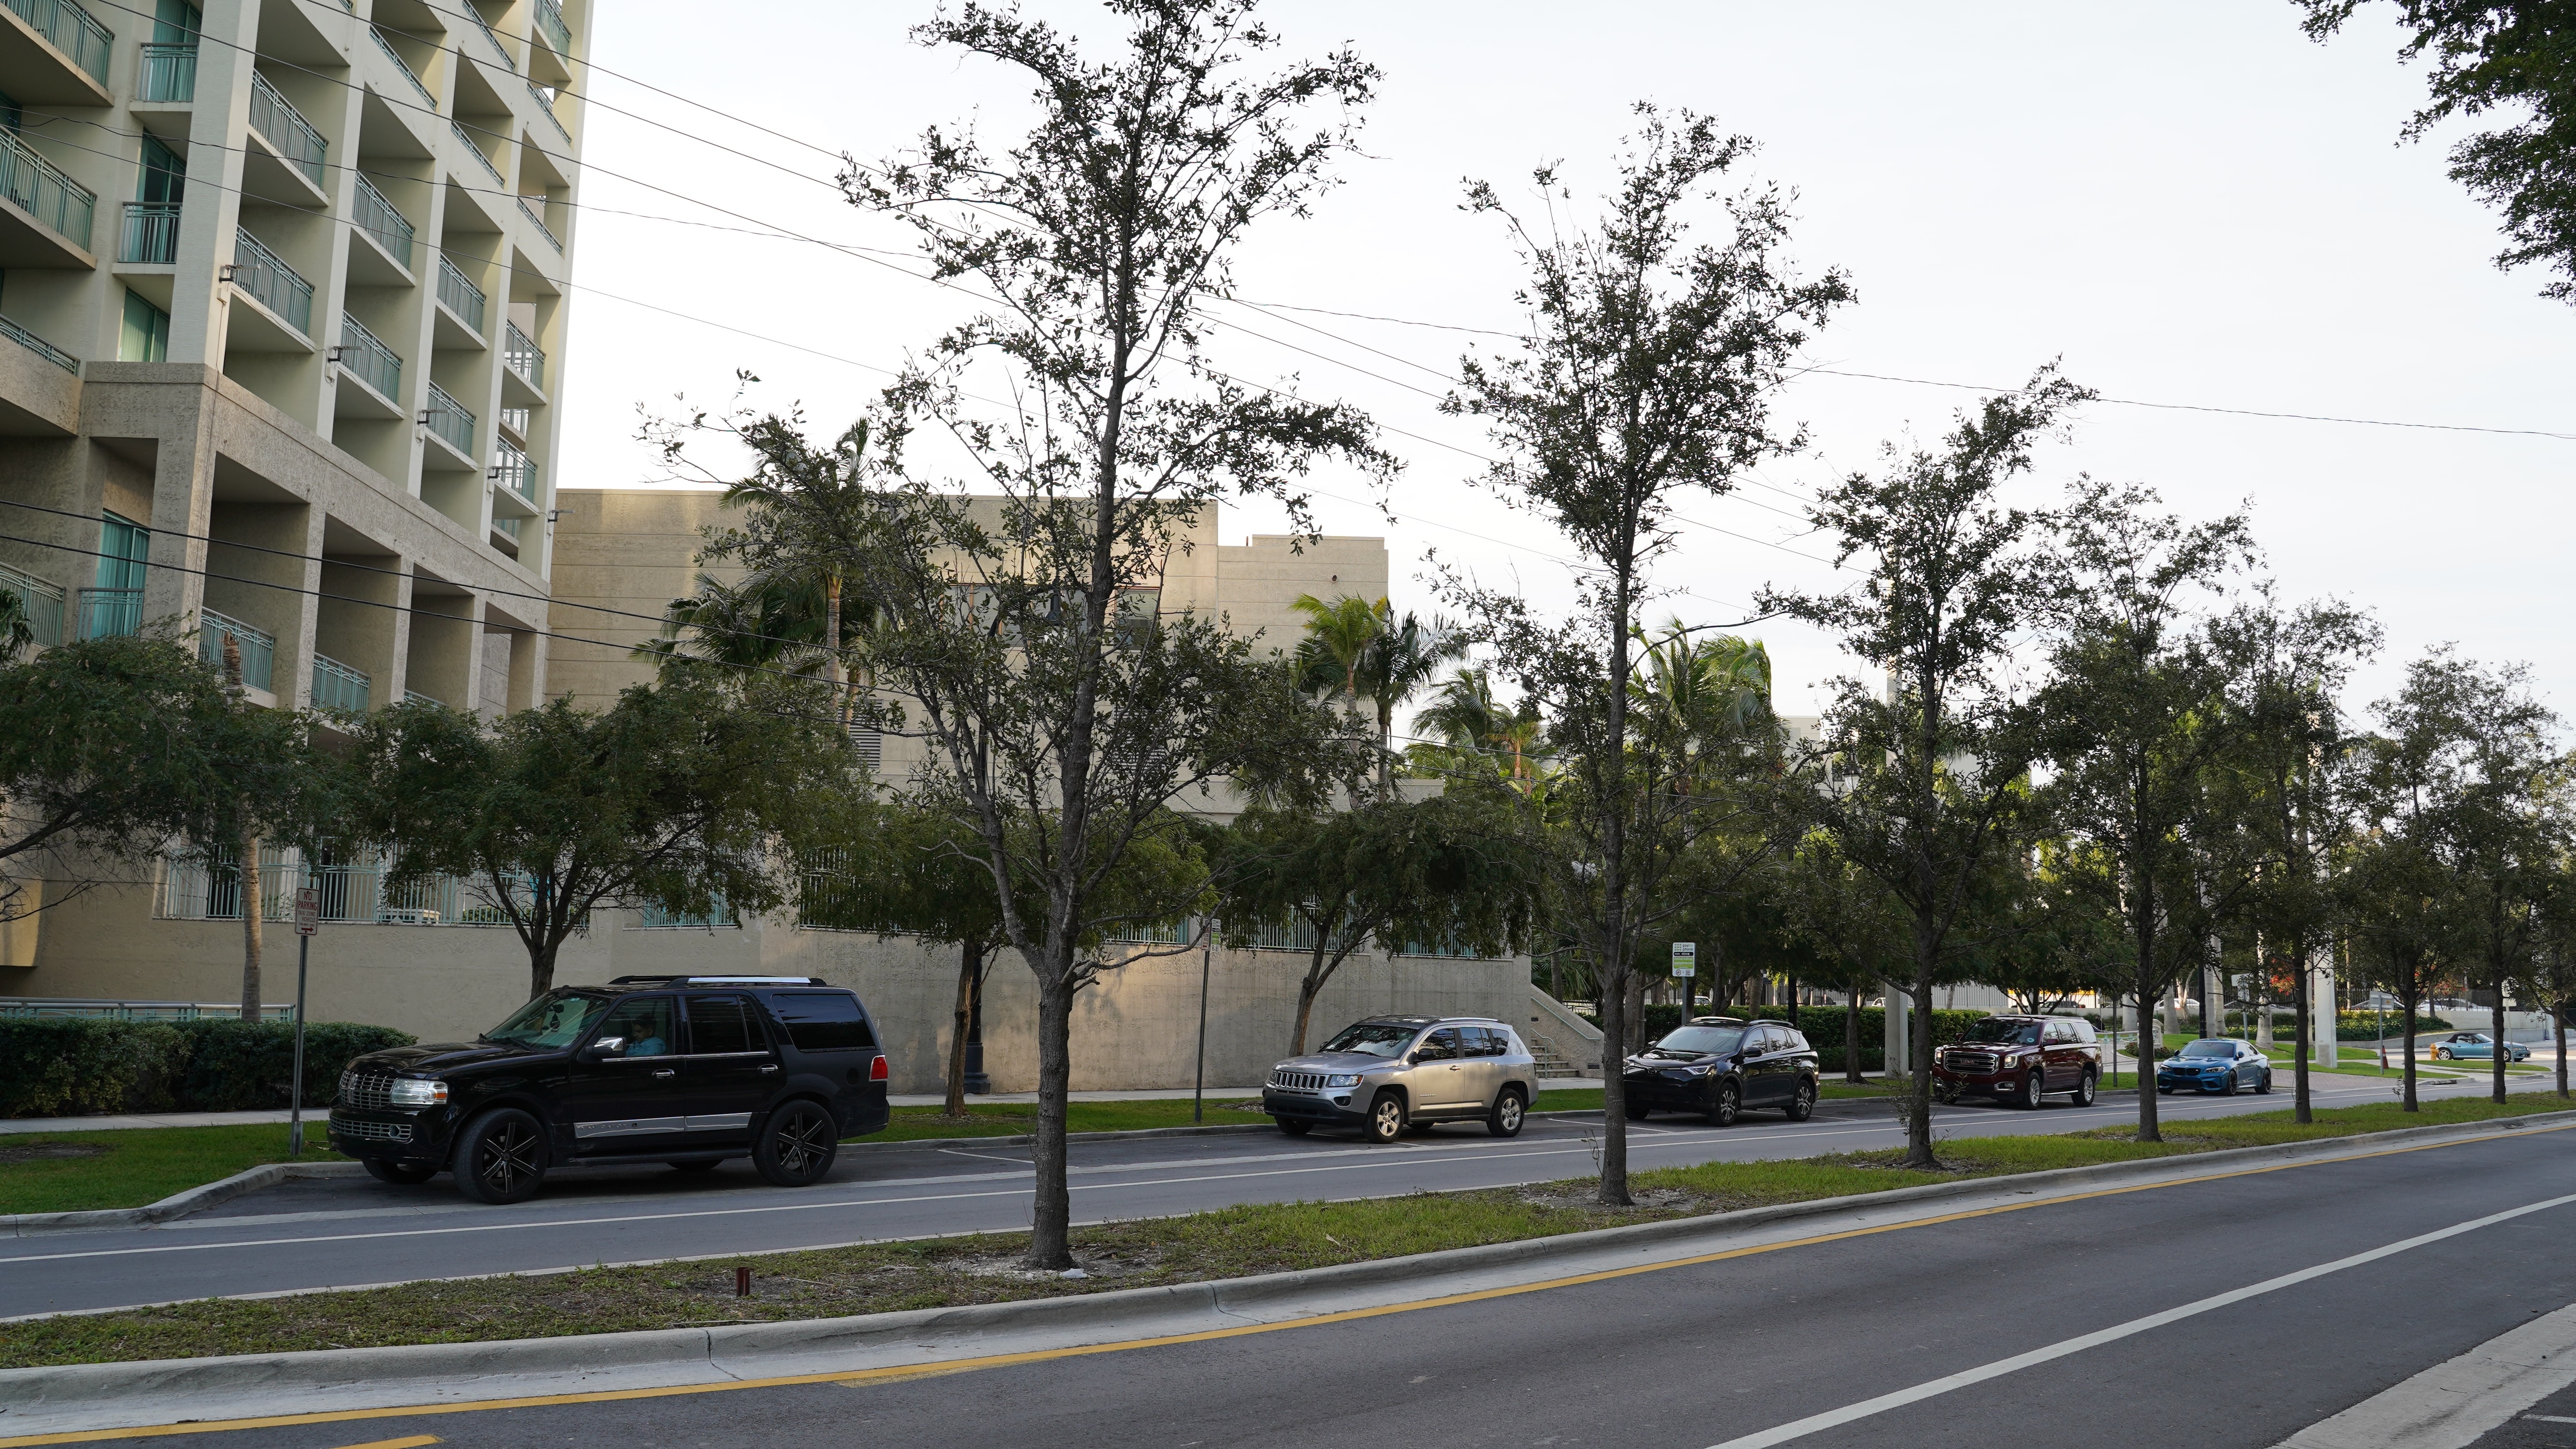 4. Ritz-Carlton Coconut Grove building at 3350 SW 27 Avenue, The Grove, Miami, FL 33133